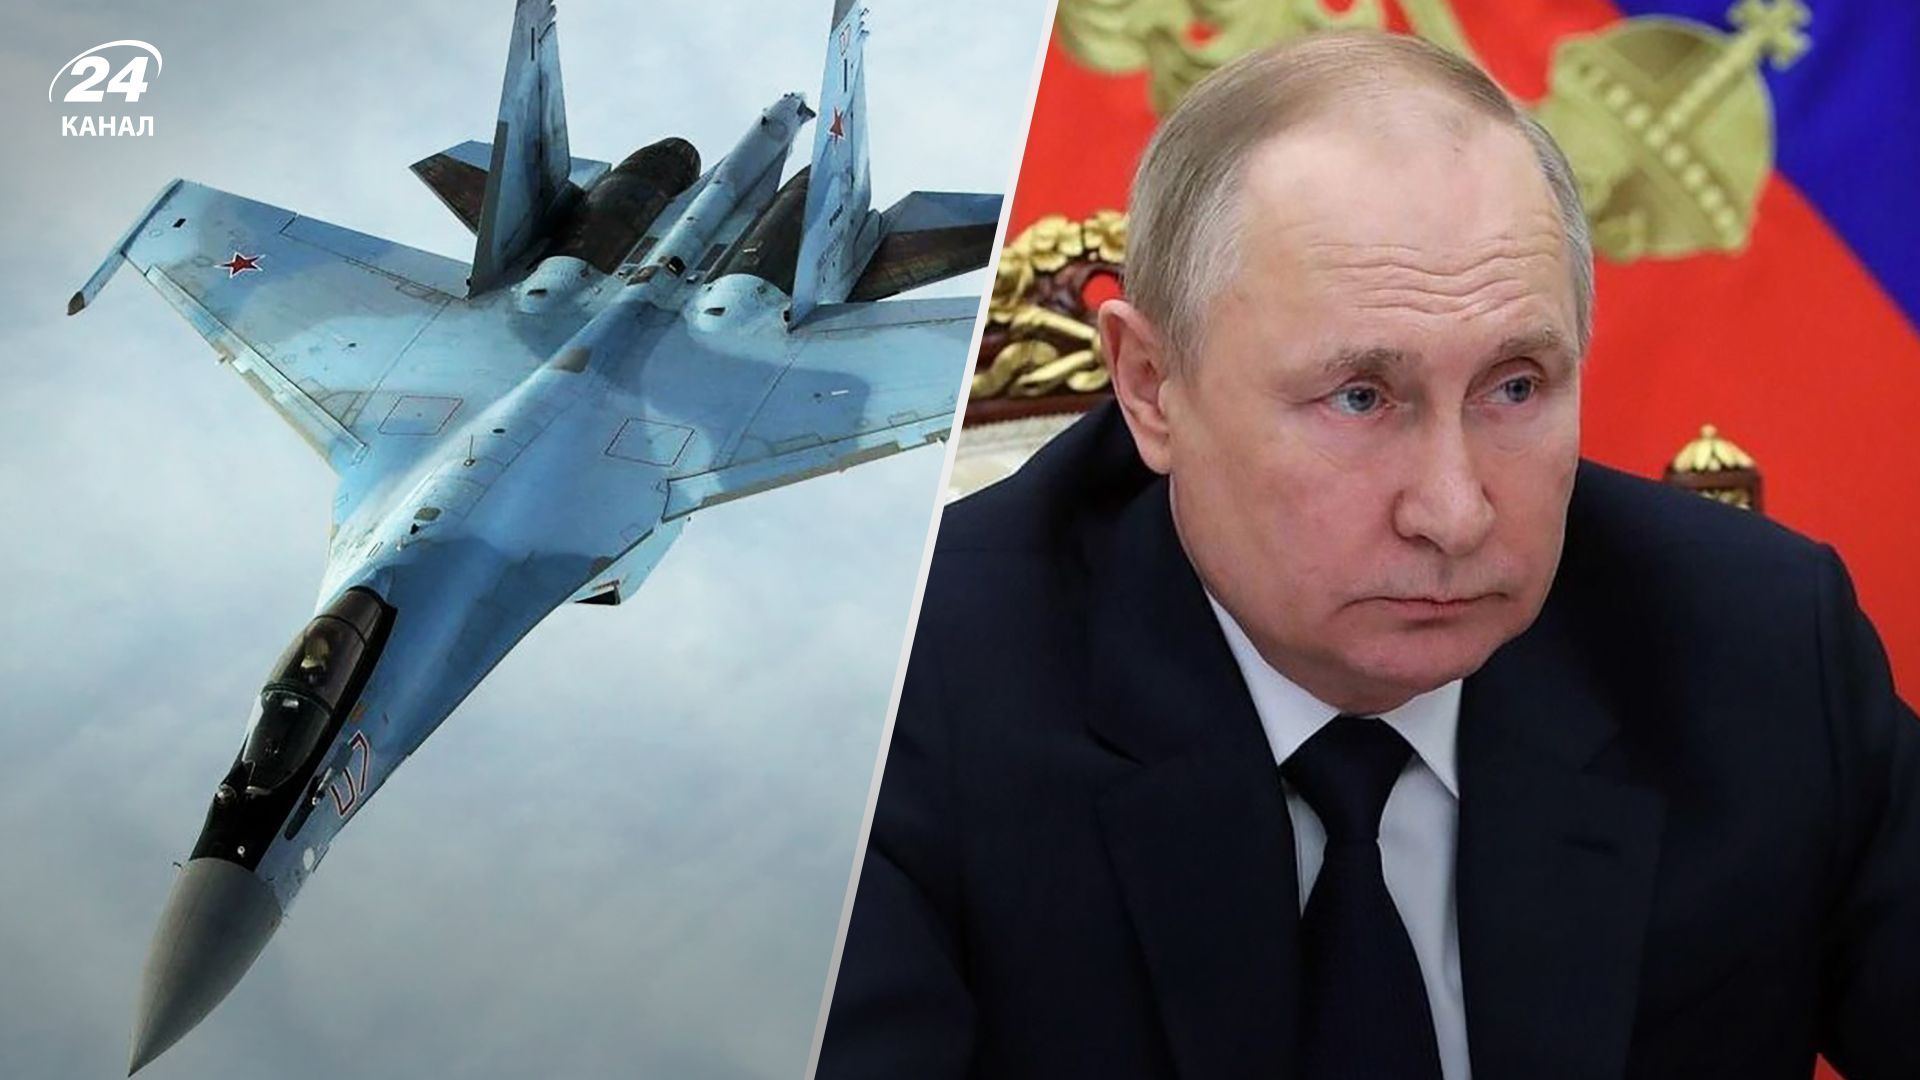 Росія продає Ірану винищувачі Су-35 - деталі від ЗМІ